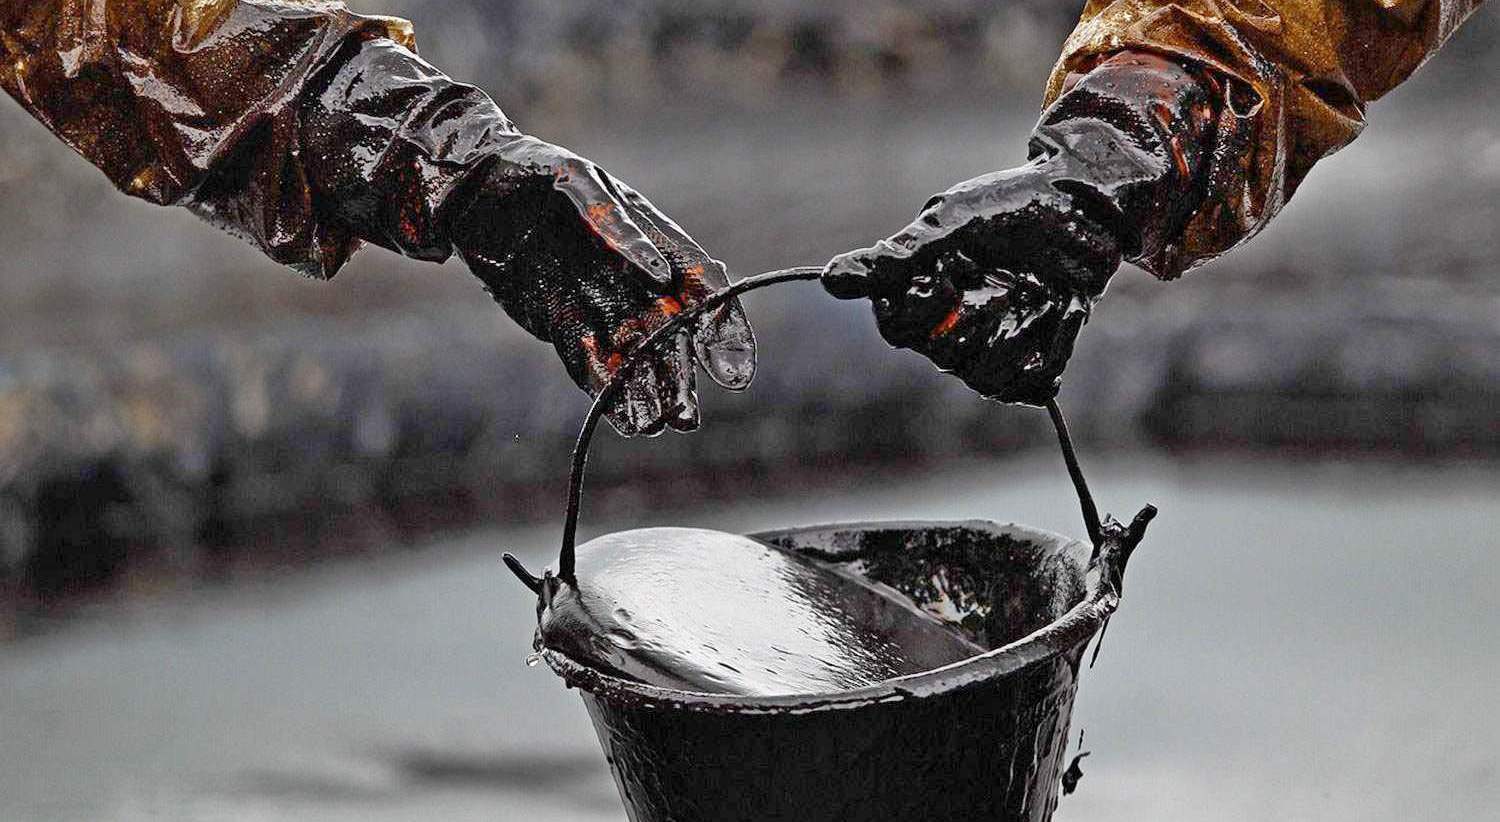 Bu ölkələr neft ehtiyatlarını satışa çıxaracaq: “Qara qızıl” yenidən ucuzlaşa bilər